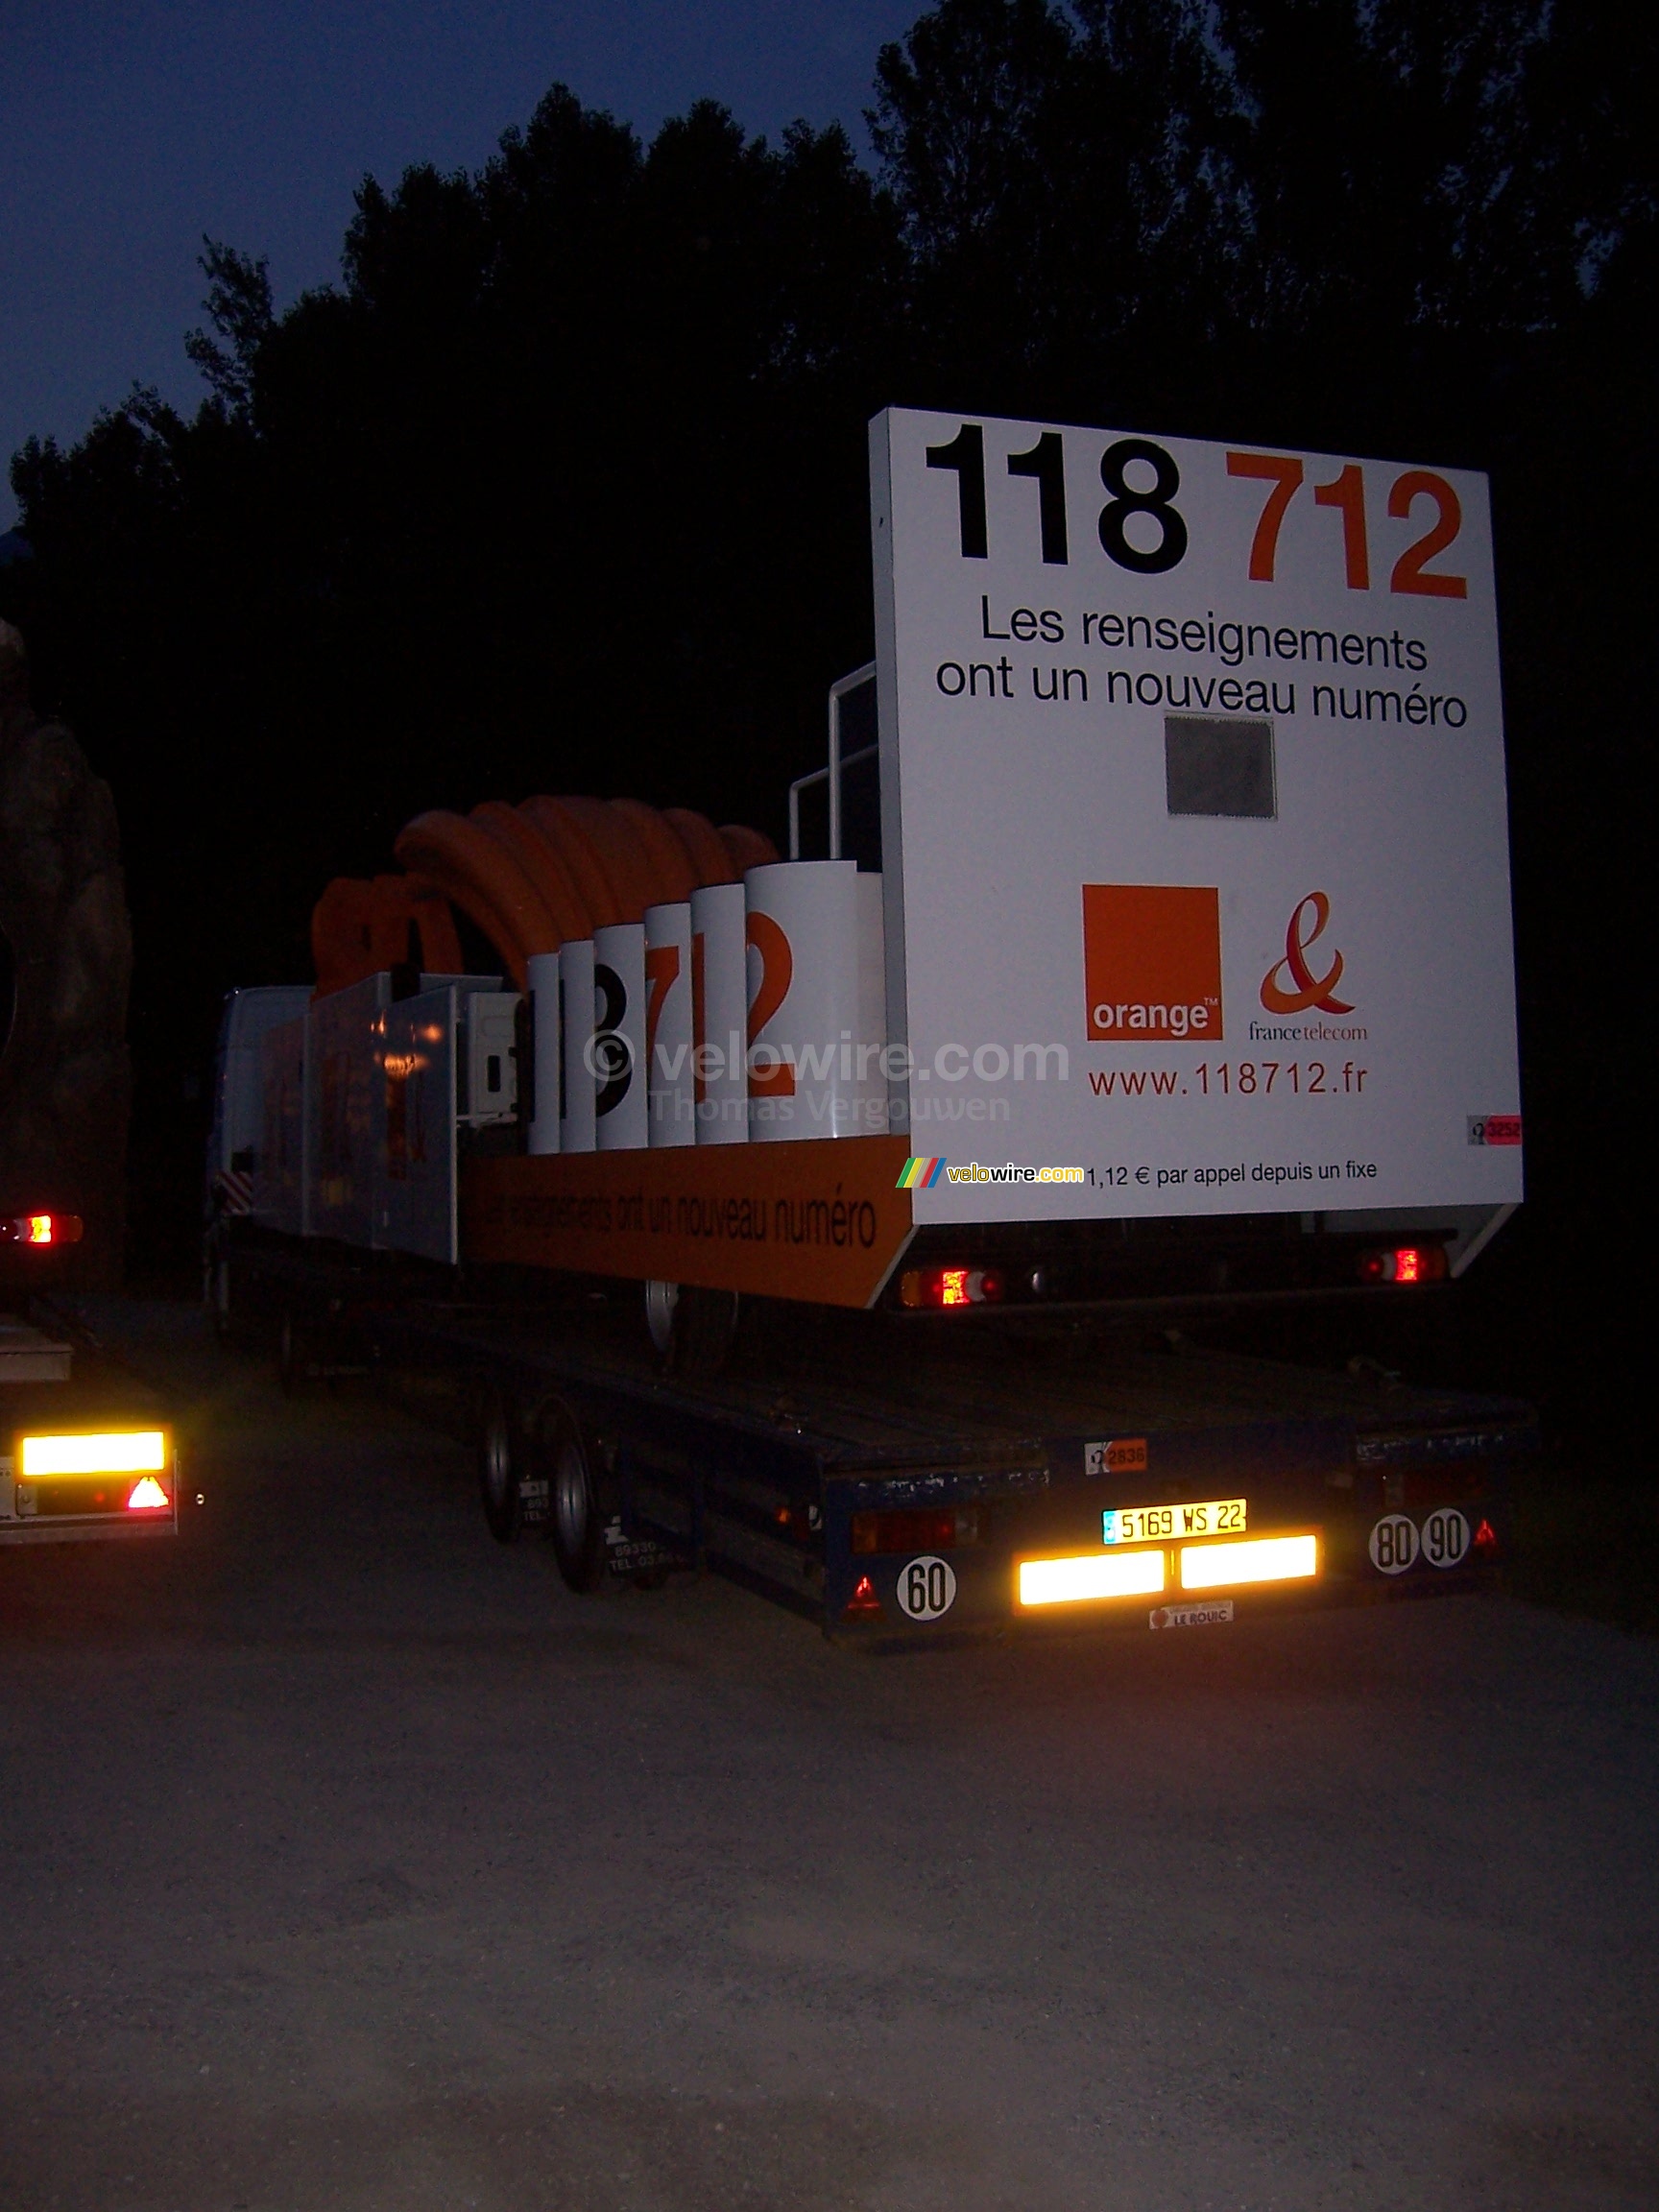 La caravane 118 712 de France Tlcom / Orange bien range sur le camion